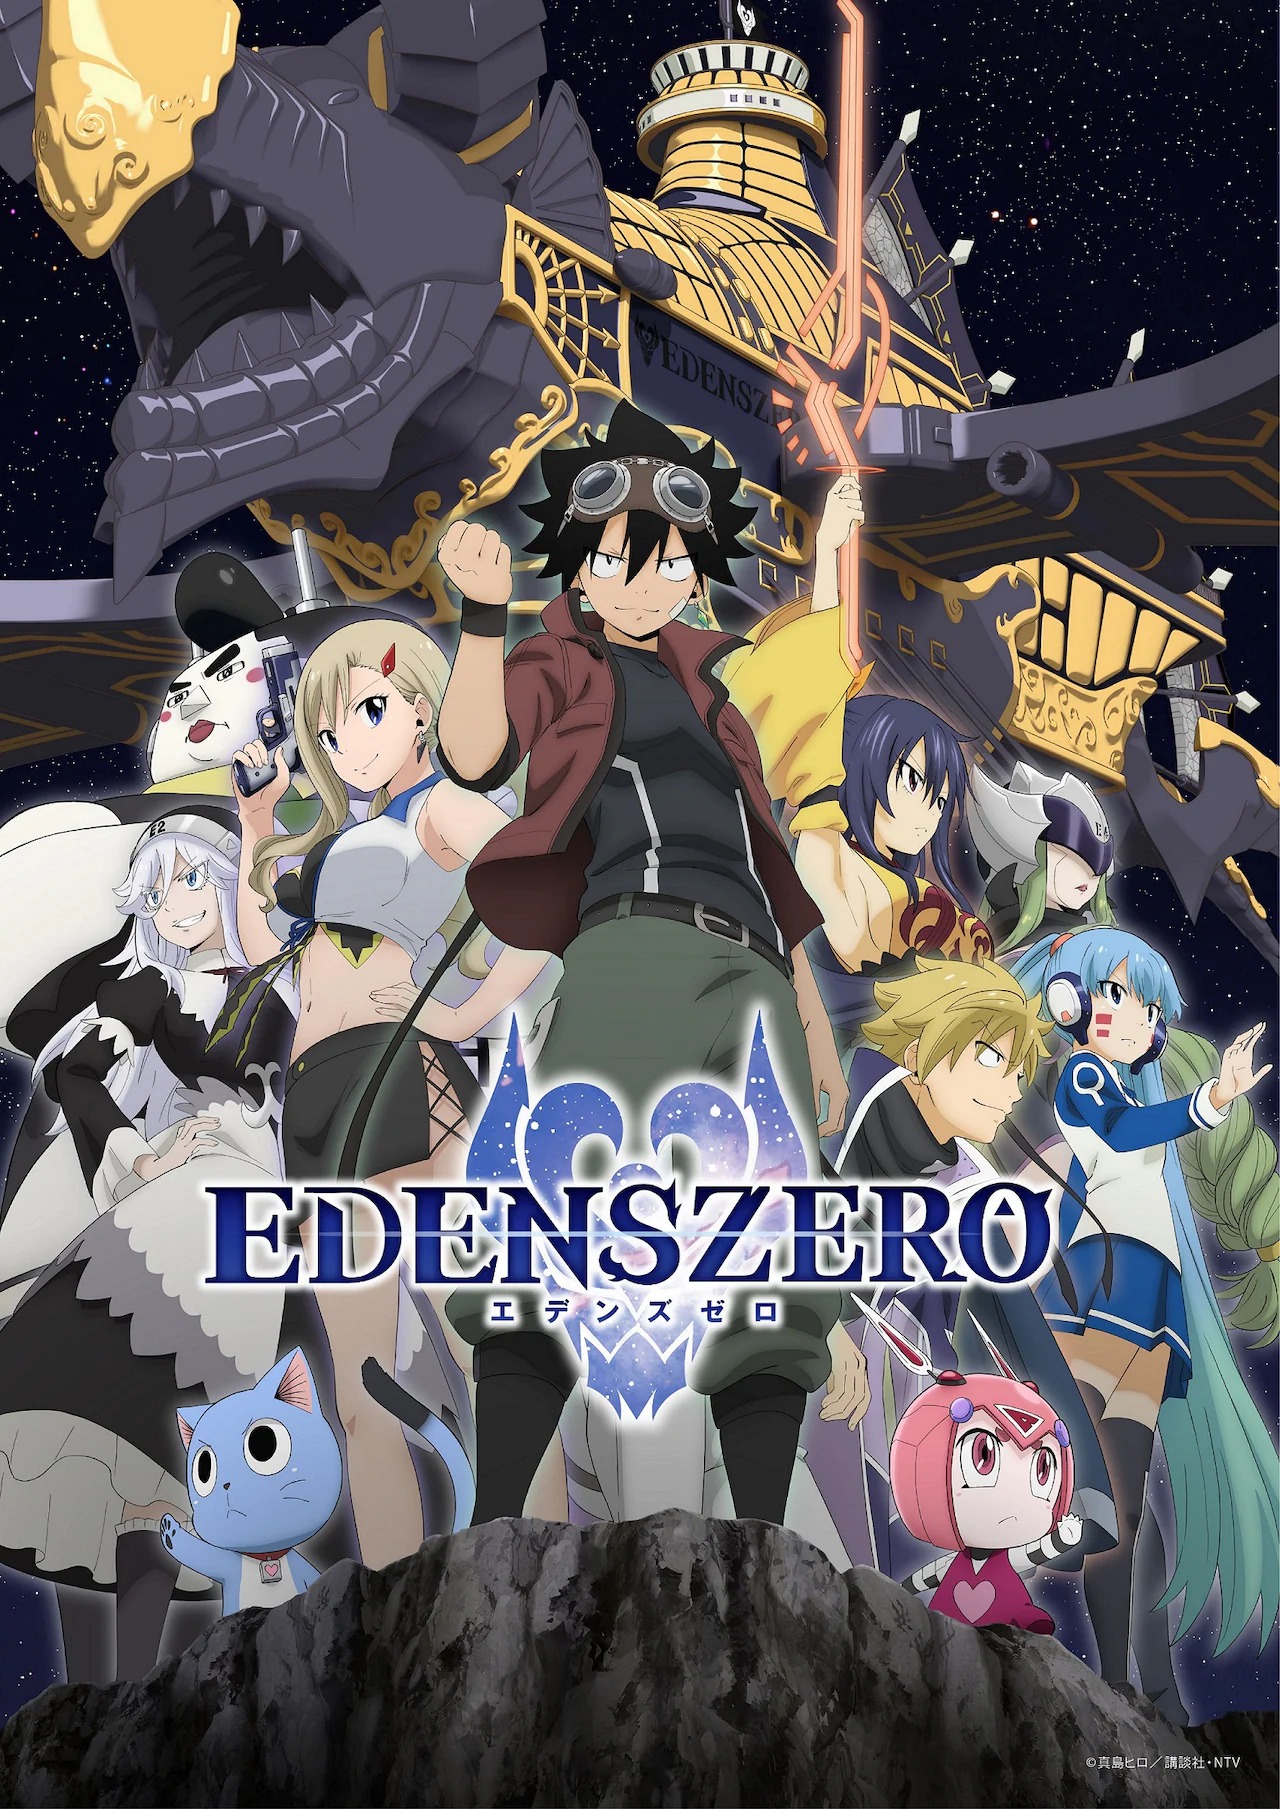 Edens Zero  Segunda temporada recebe visual inédito